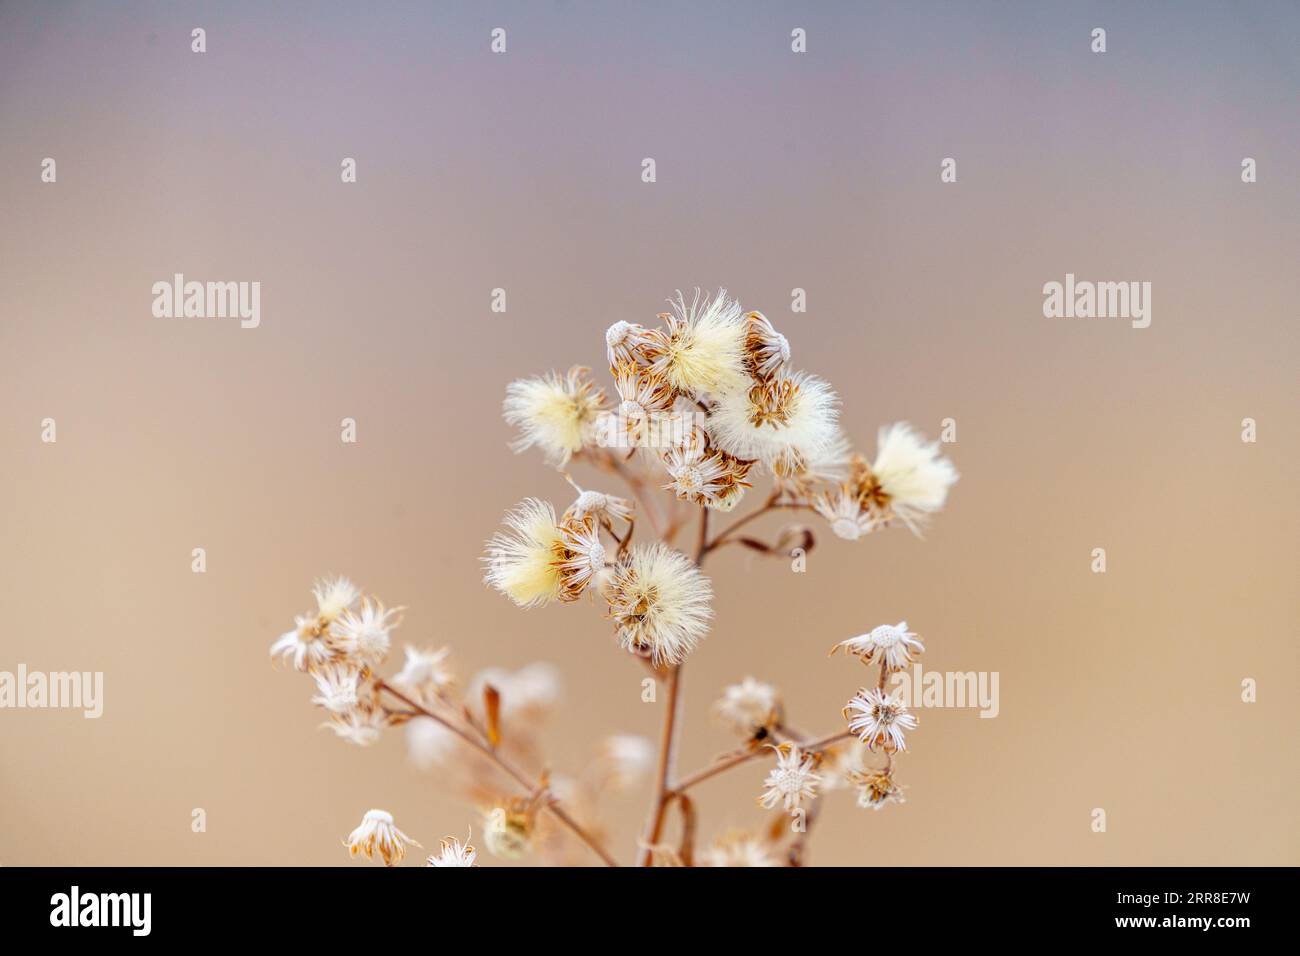 Un set di delicati fiori bianchi con petali cremosi è illuminato su uno sfondo morbido e sfocato creato da una giornata luminosa e soleggiata Foto Stock